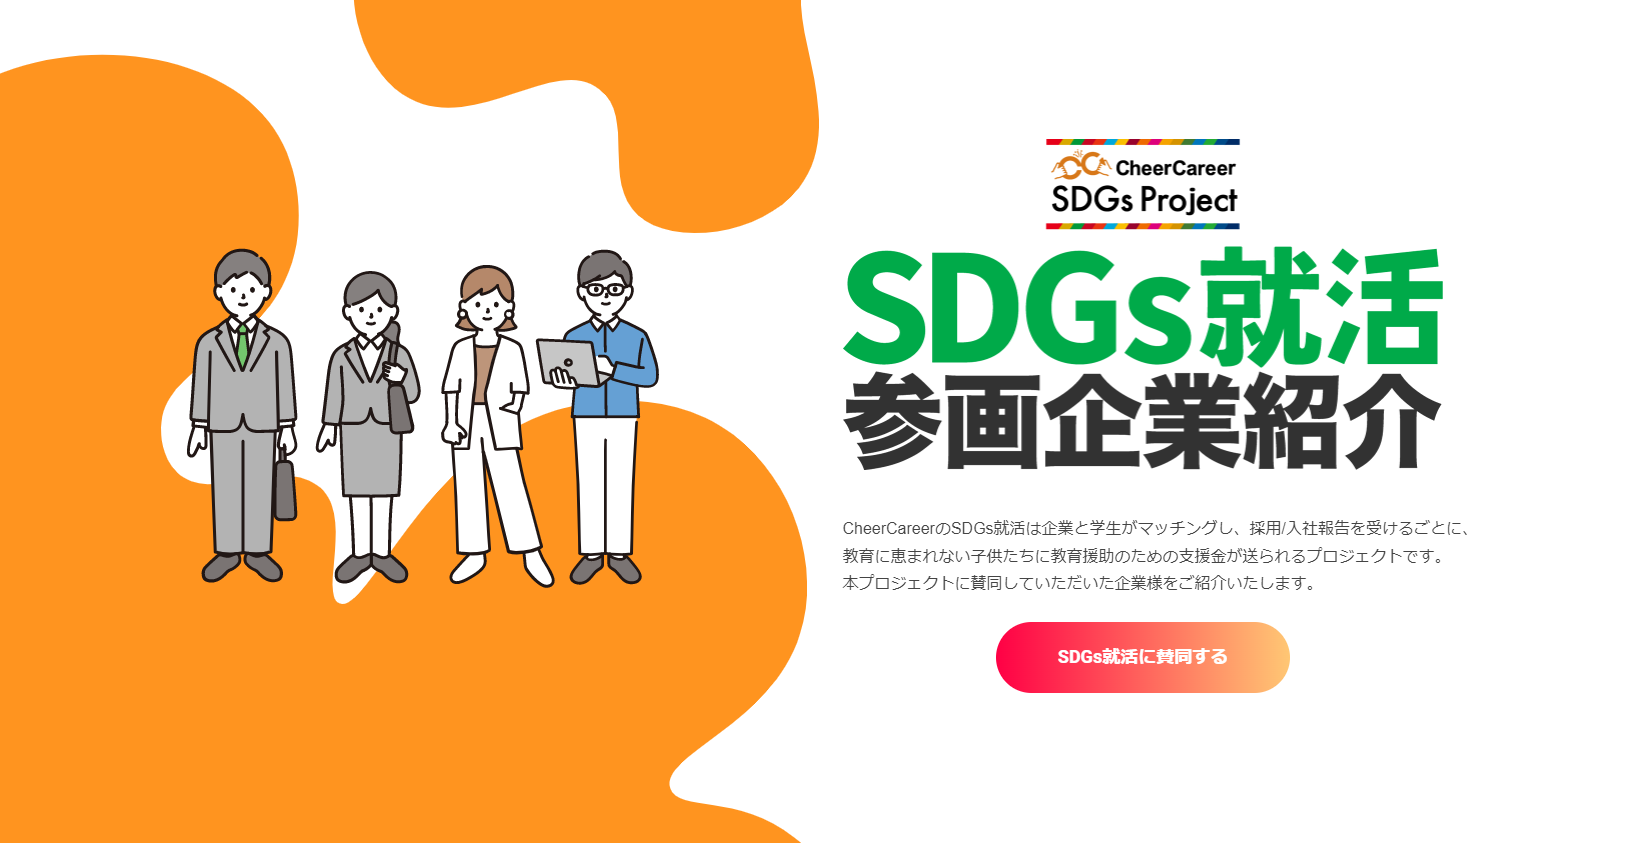 【メディア掲載】CheerCareer「SDGs就活参画企業紹介ページ」に掲載されました。